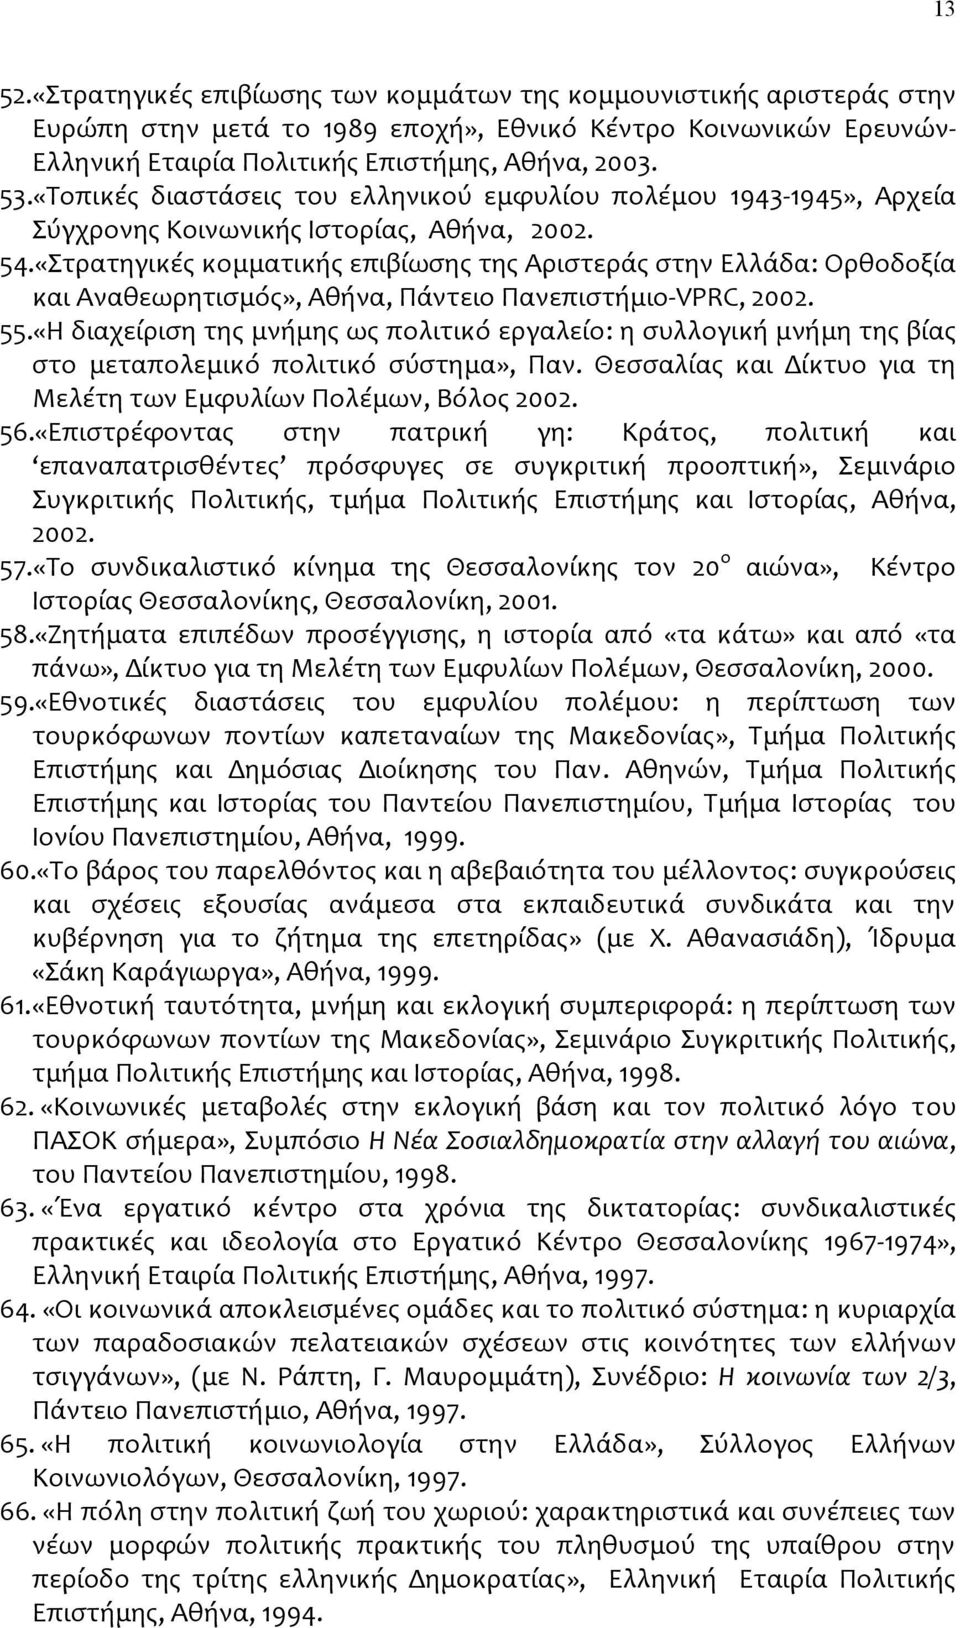 «Στρατηγικές κομματικής επιβίωσης της Αριστεράς στην Ελλάδα: Ορθοδοξία και Αναθεωρητισμός», Αθήνα, Πάντειο Πανεπιστήμιο VPRC, 2002. 55.